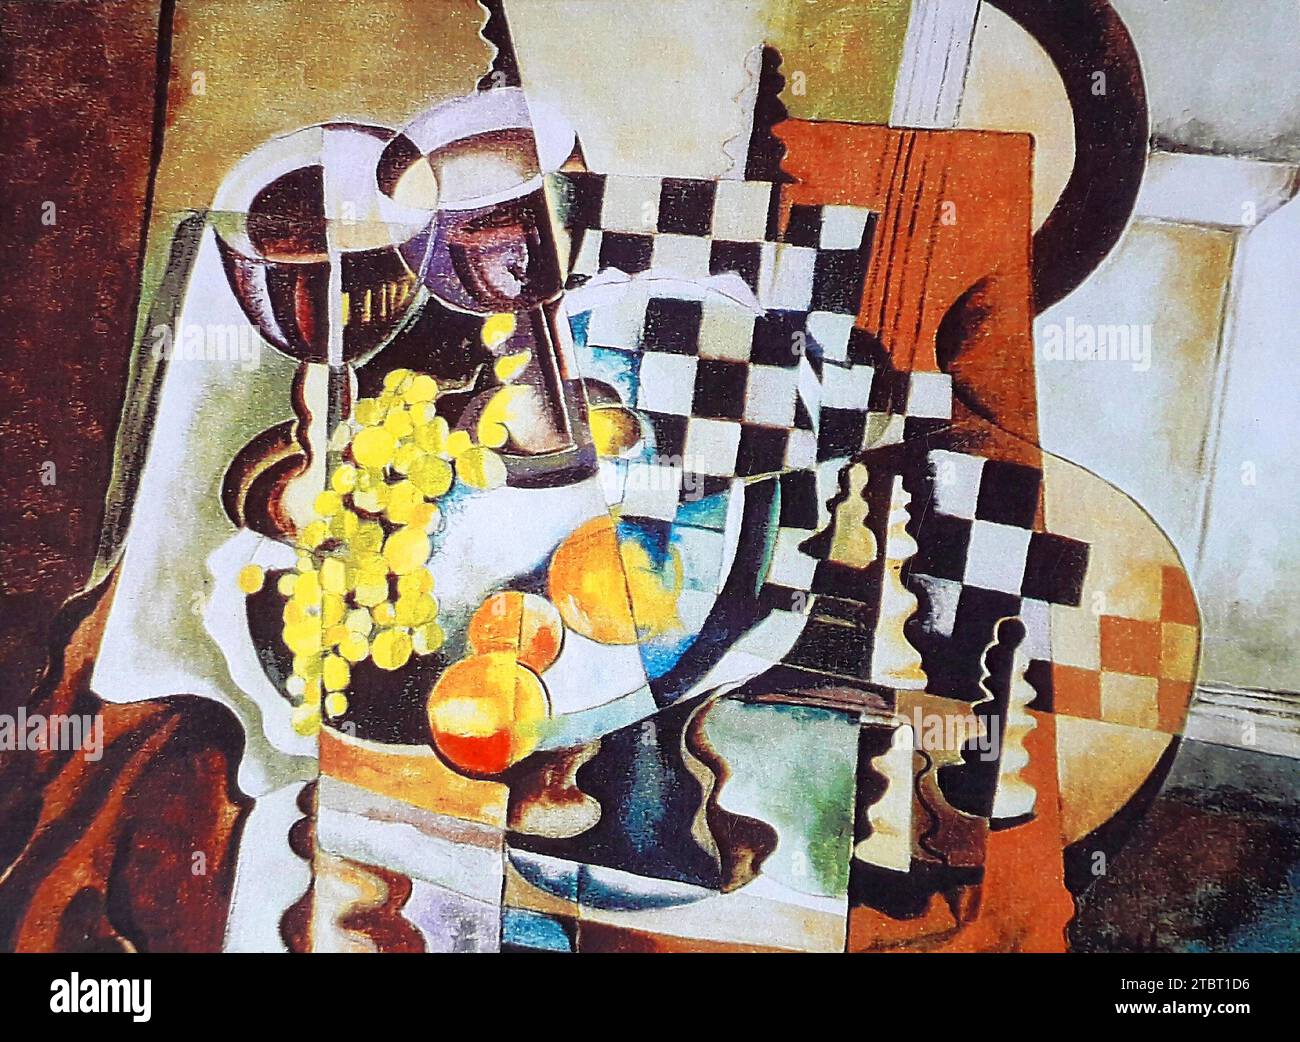 Peinture à l'huile par Volker von Mallinckrodt dans le style cubiste, ca. 1984 avec guitare, échiquier, pièces d'échecs, verres à vin et pêches - Volker von Mallinckrodt a étudié l'art avec Xaver Fuhr à Munich. Banque D'Images